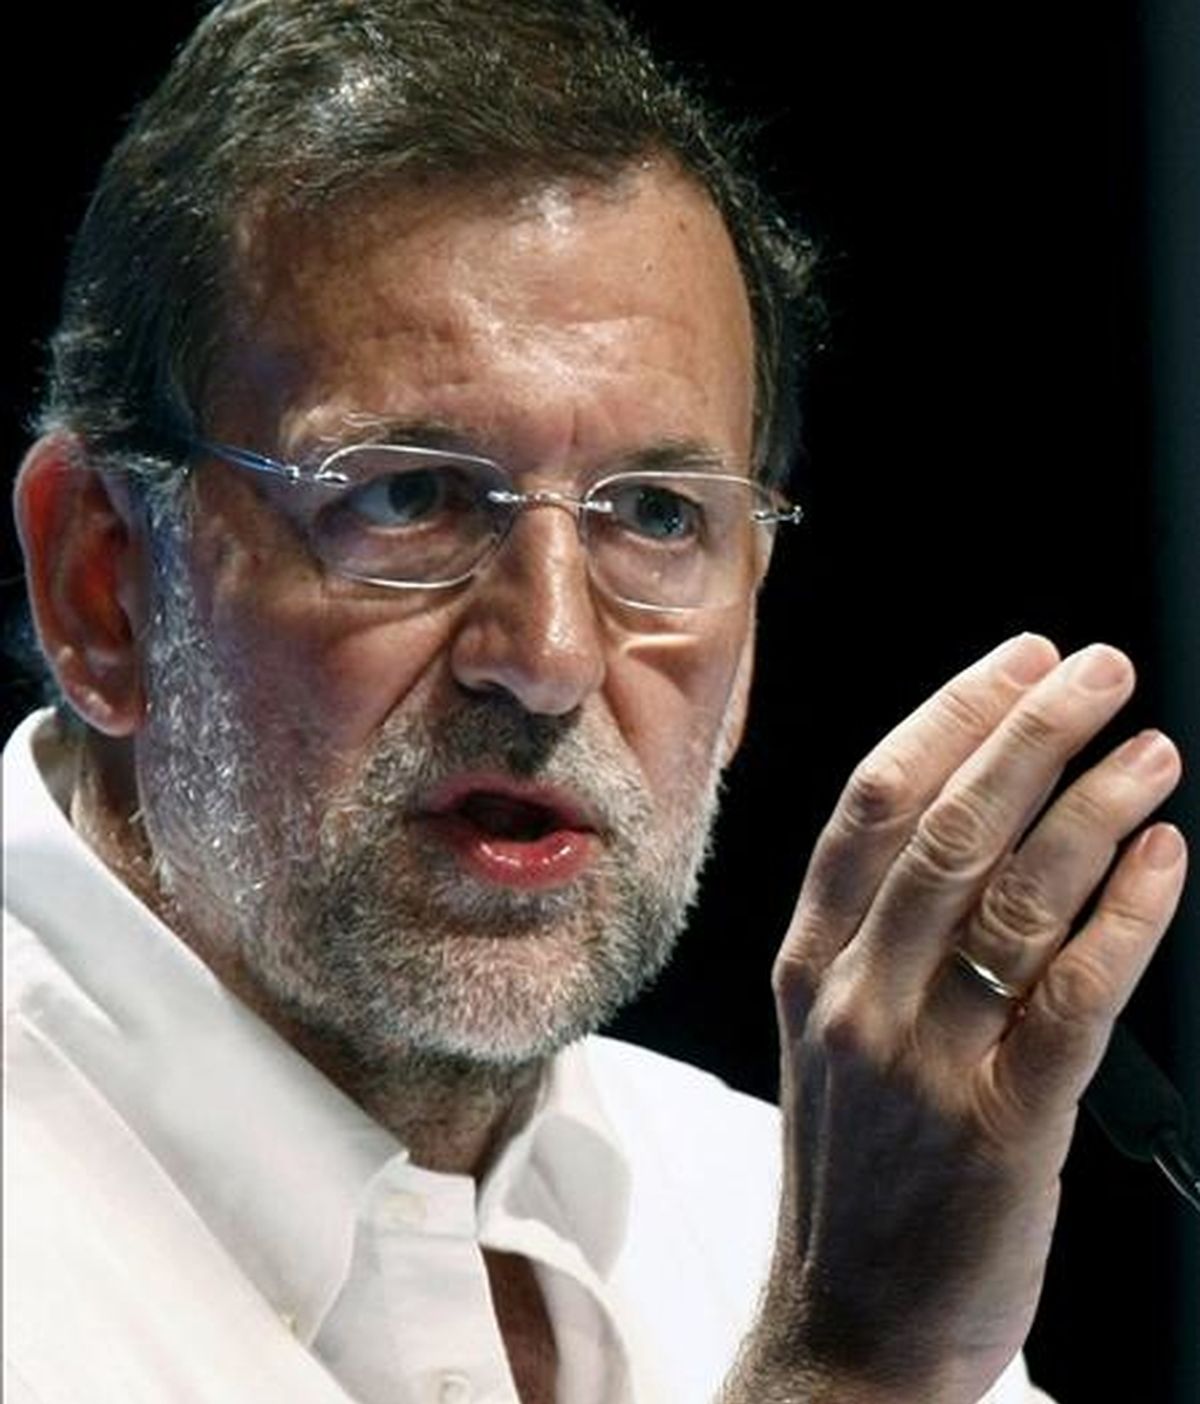 El presidente del Partido Popular, Mariano Rajoy, durante su intervención en un acto electoral que se celebrado en el Palacio de Festivales de la capital cántabra. EFE/Archivo